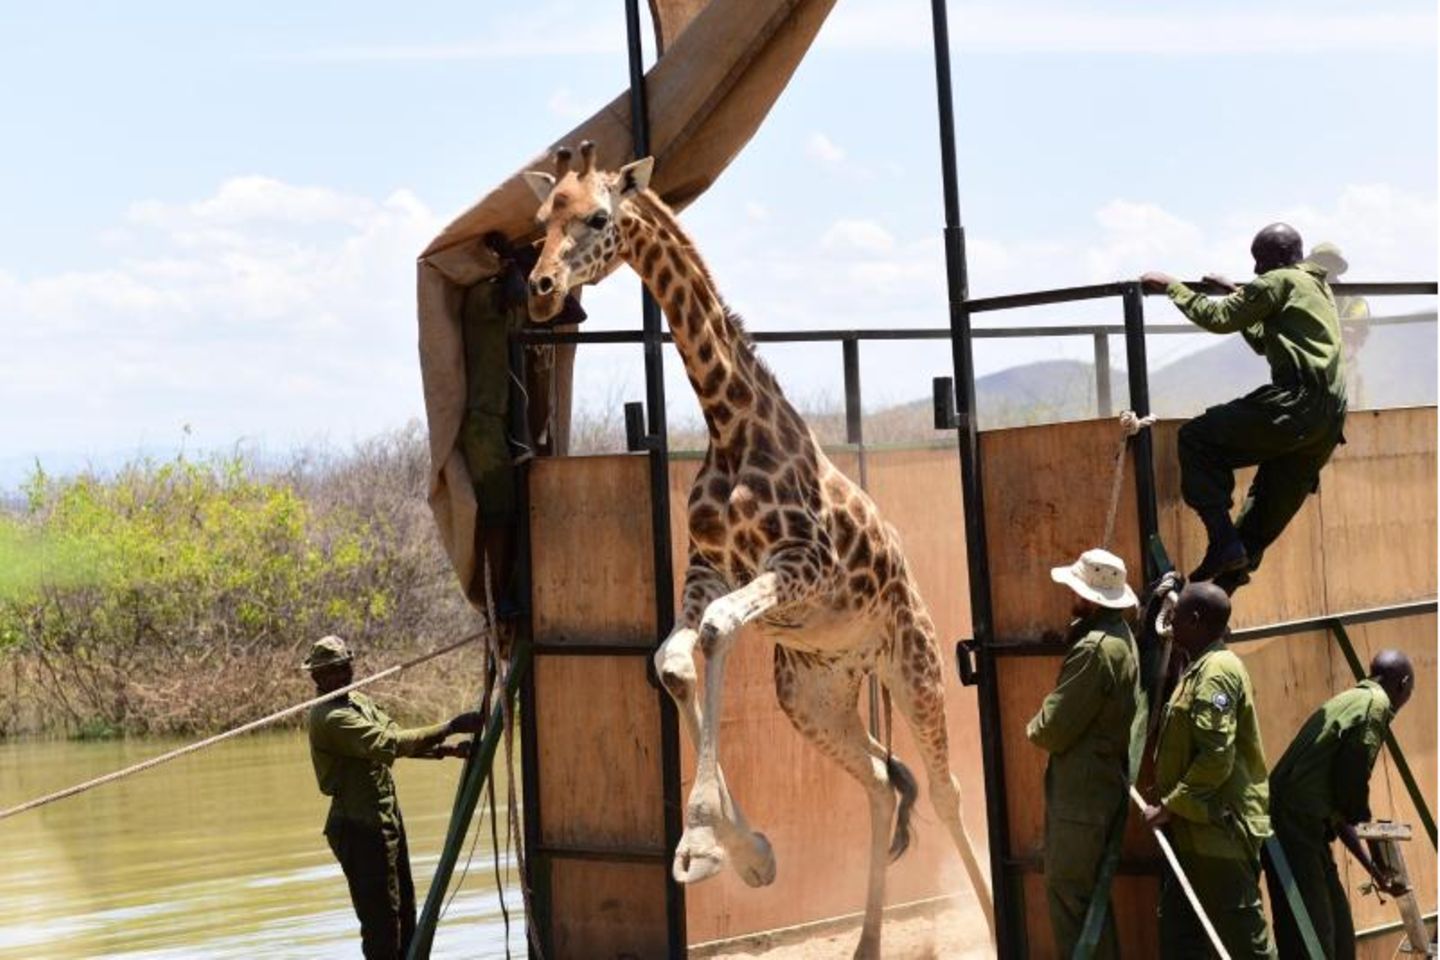 Giraffe in Kenia verlässt die Barke, um auf das Festland zu gelangen